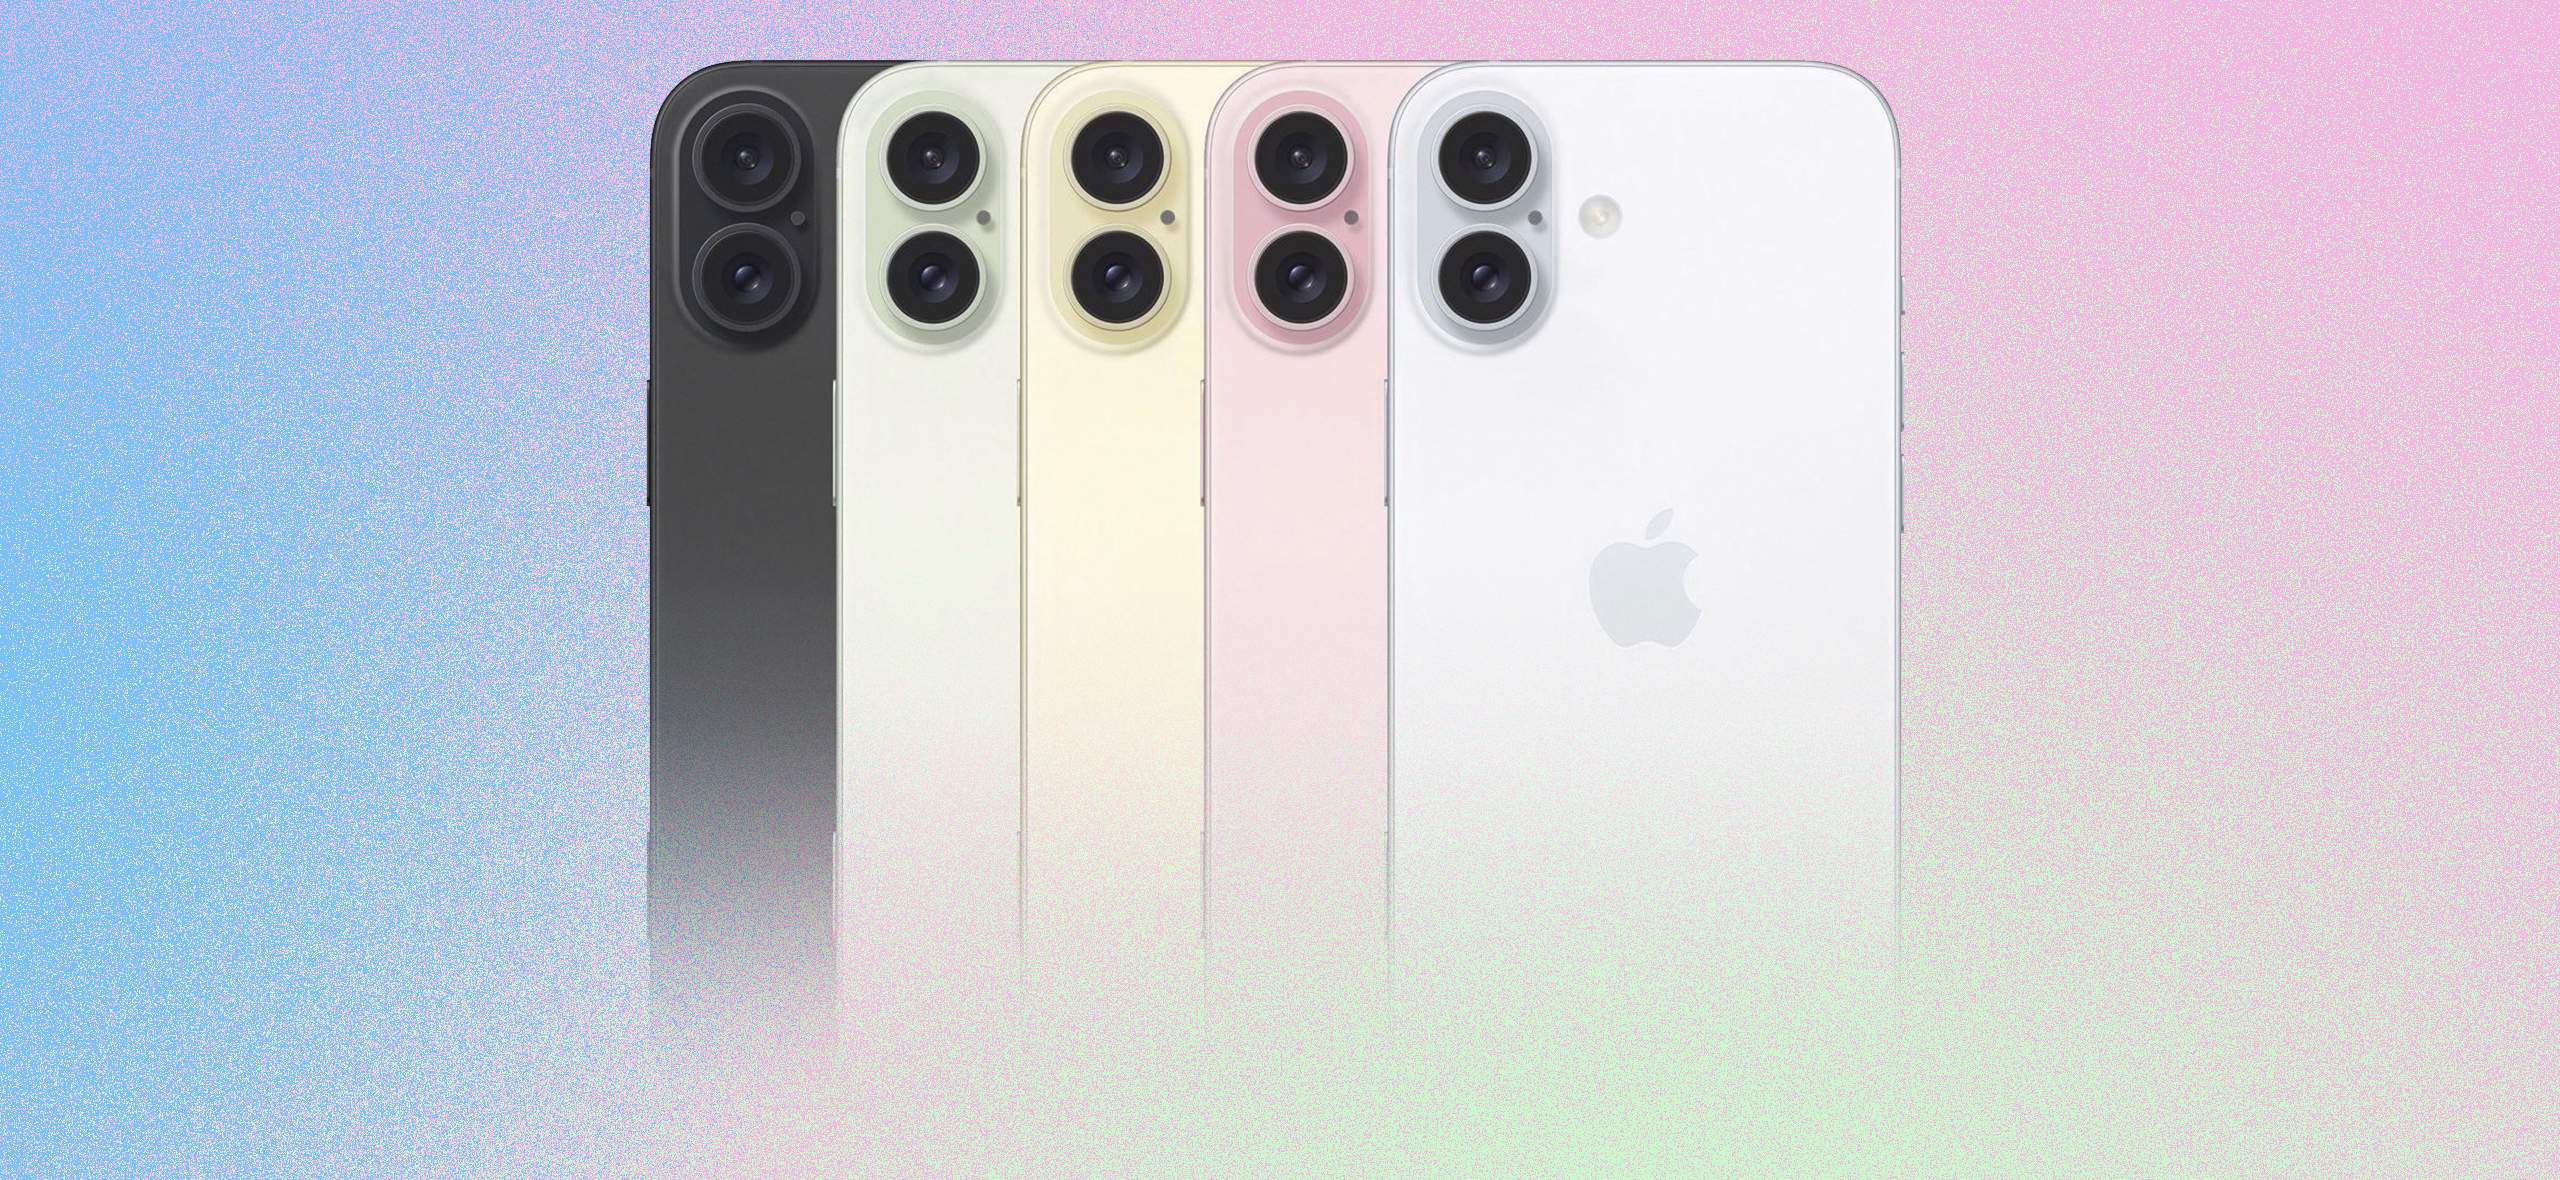 Каким будет iPhone 16: новый дизайн, разъемы и названия моделей